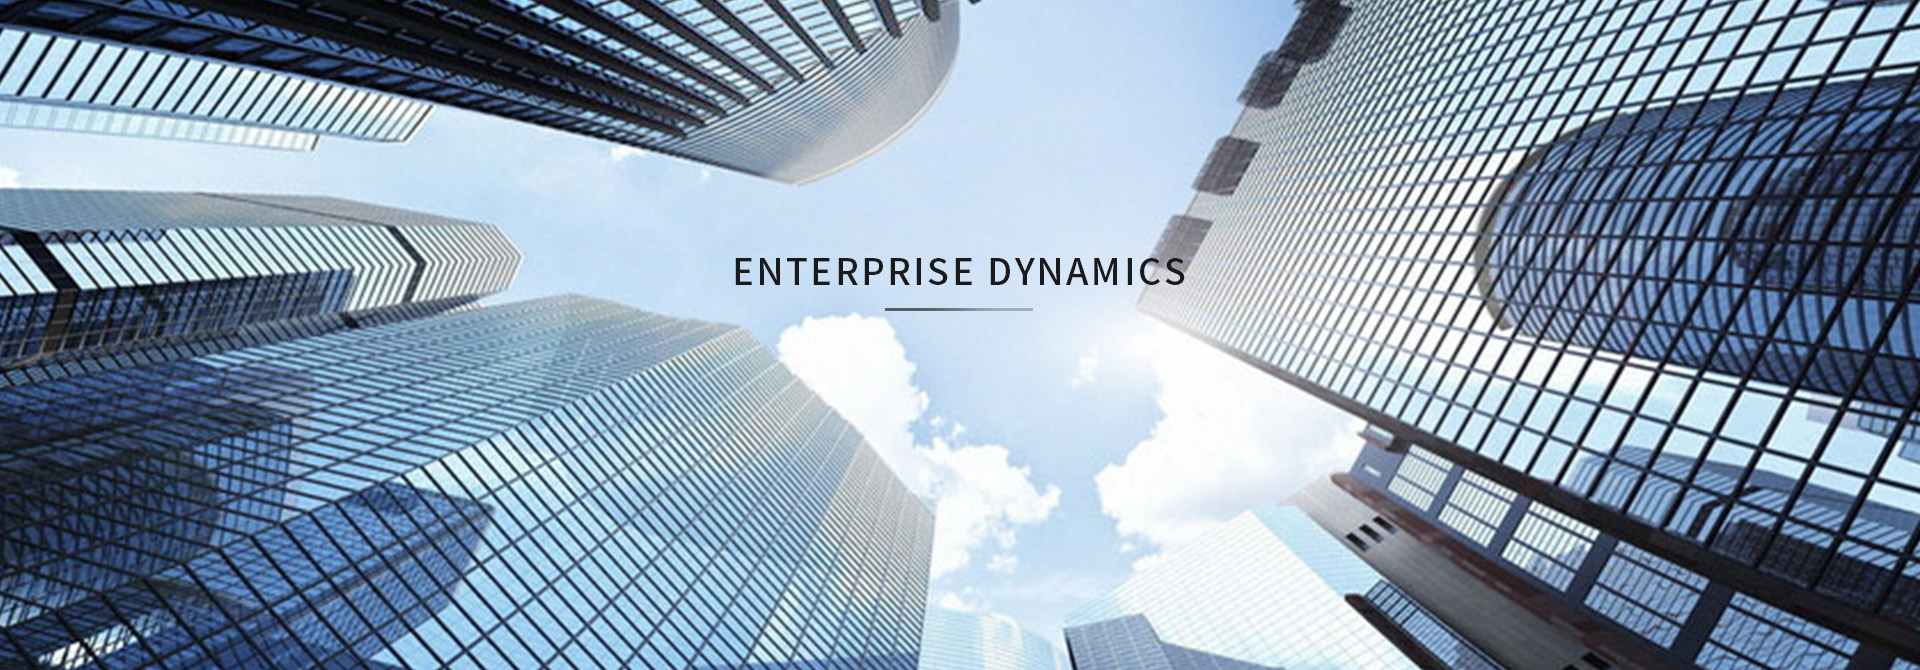 Enterprise dynamics